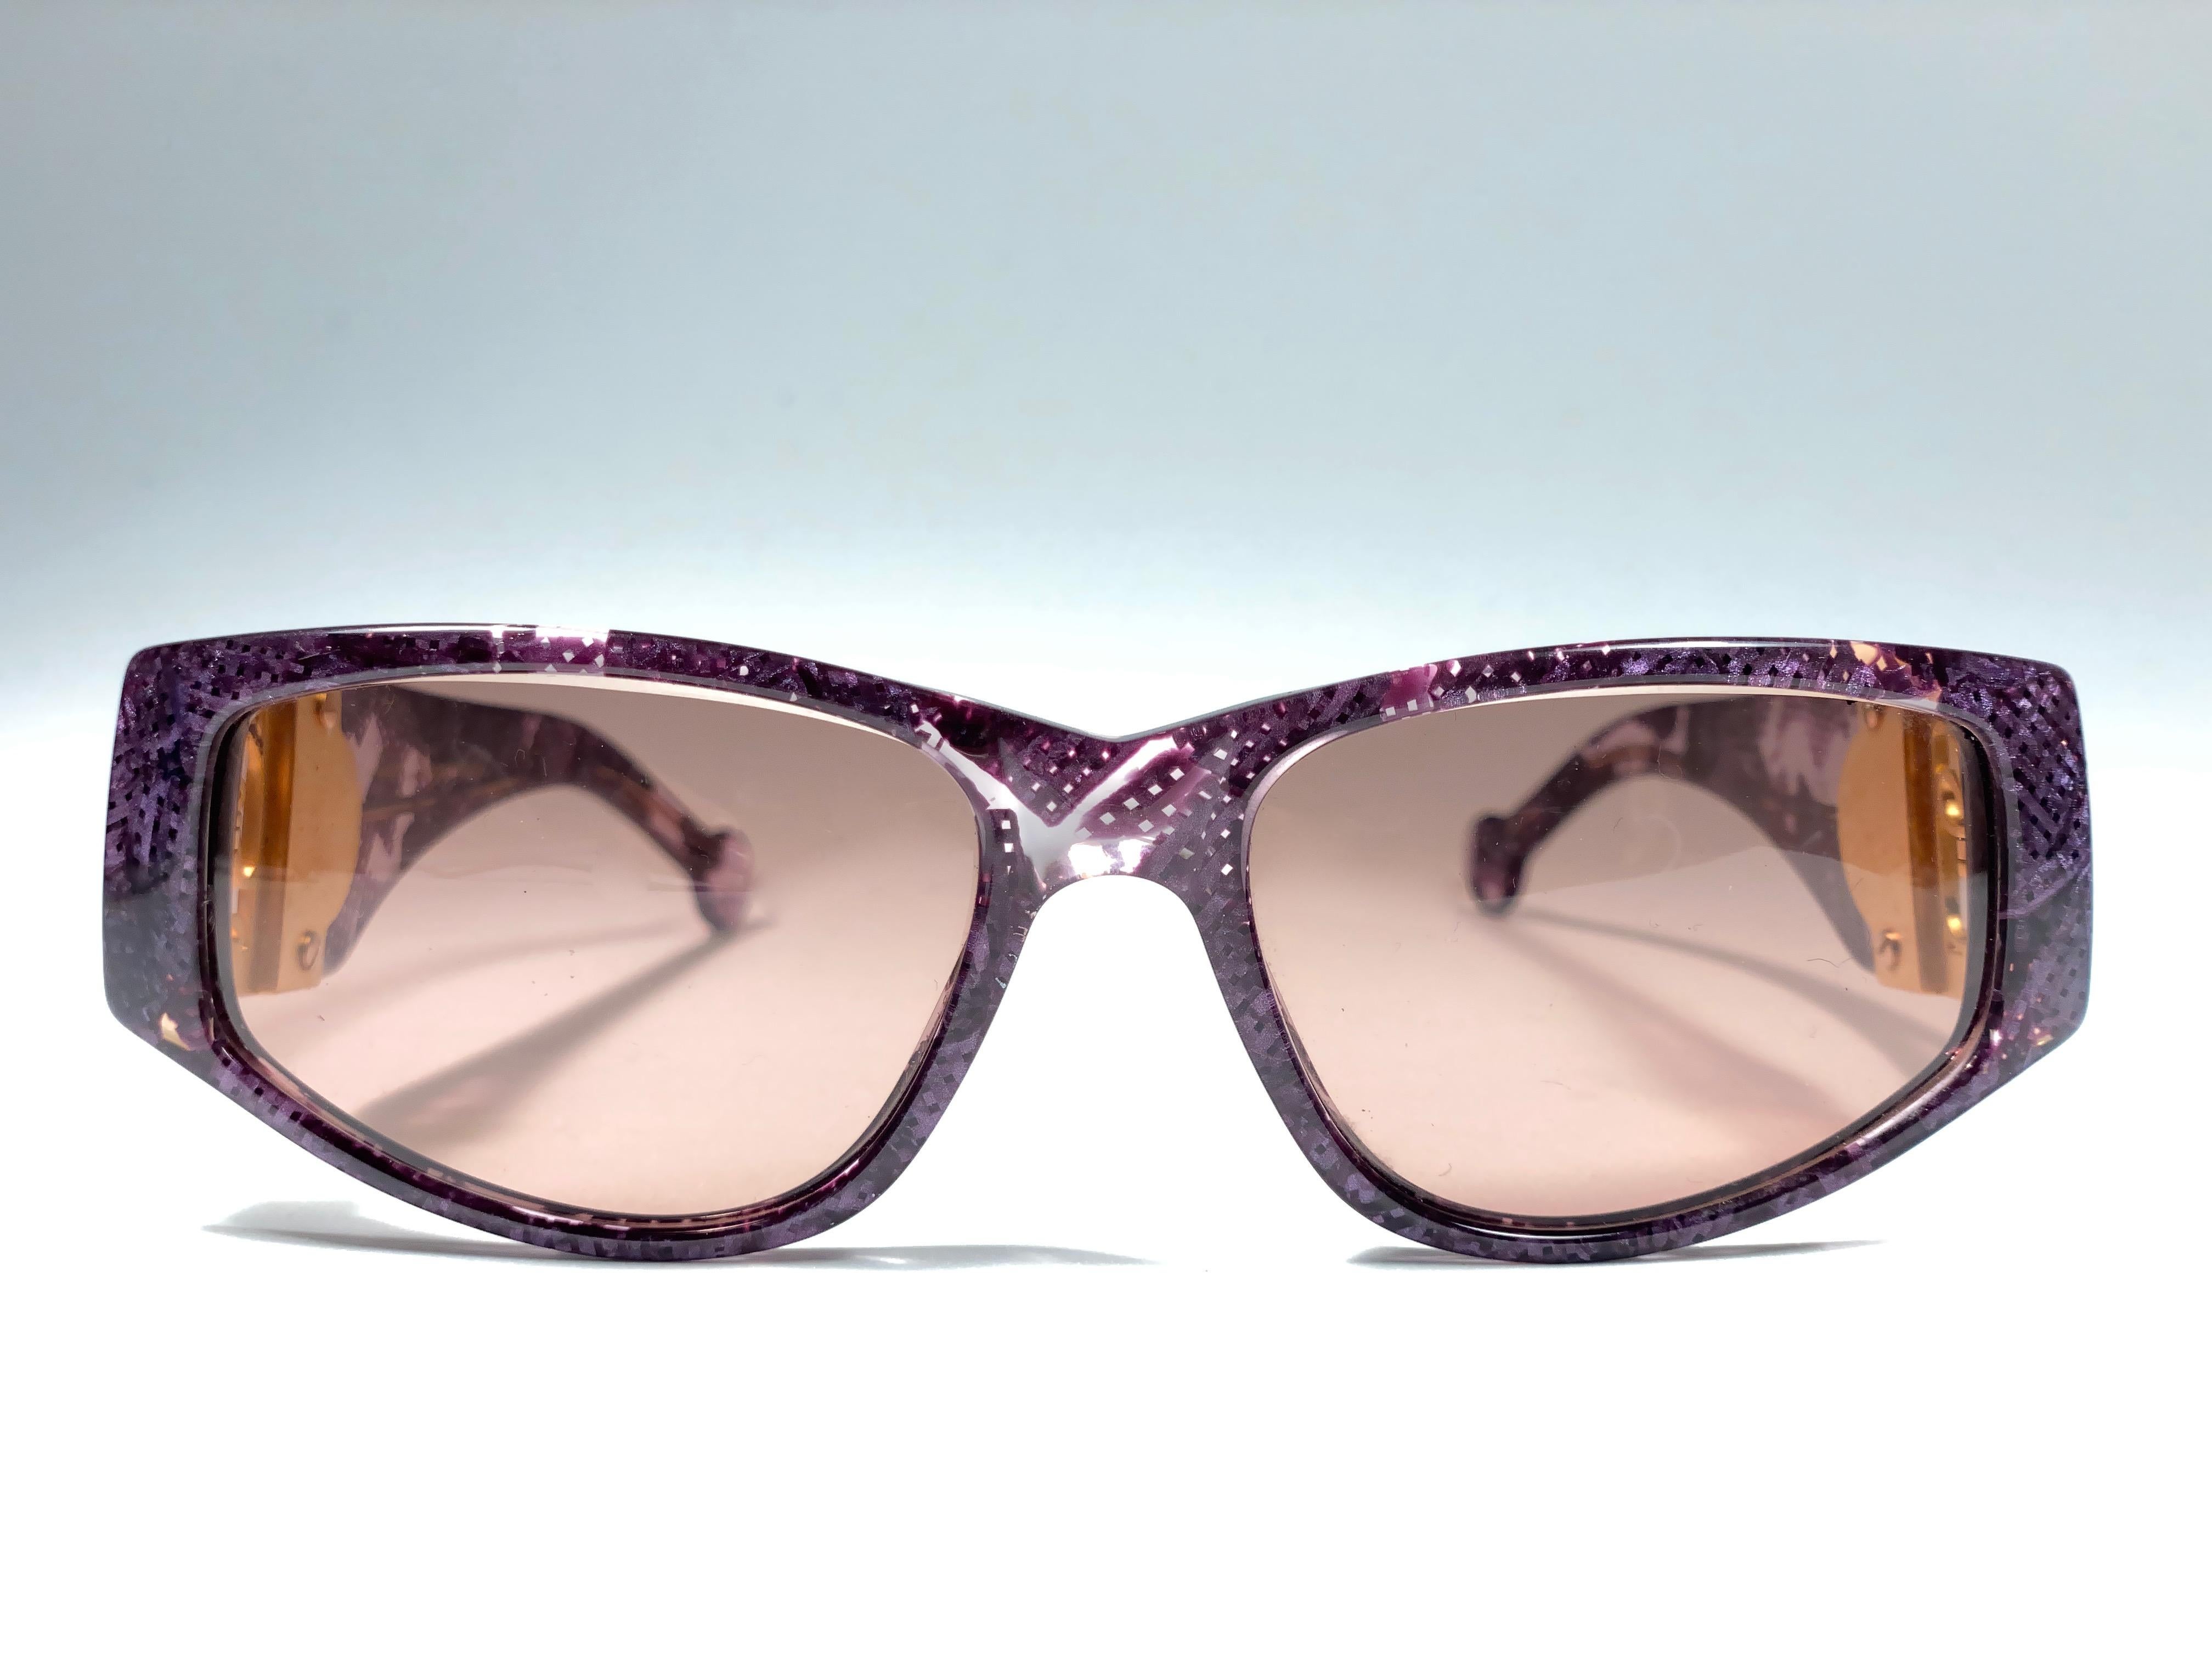 Erstaunlich Paar Vintage 1980's Karl Lagerfeld Gold & fuchsia Mosaik Sonnenbrille Framing ein Paar Bernstein Gläser.
 
Dieses Paar kann aufgrund der Lagerung leichte Gebrauchsspuren aufweisen. Ein echtes Modestatement.